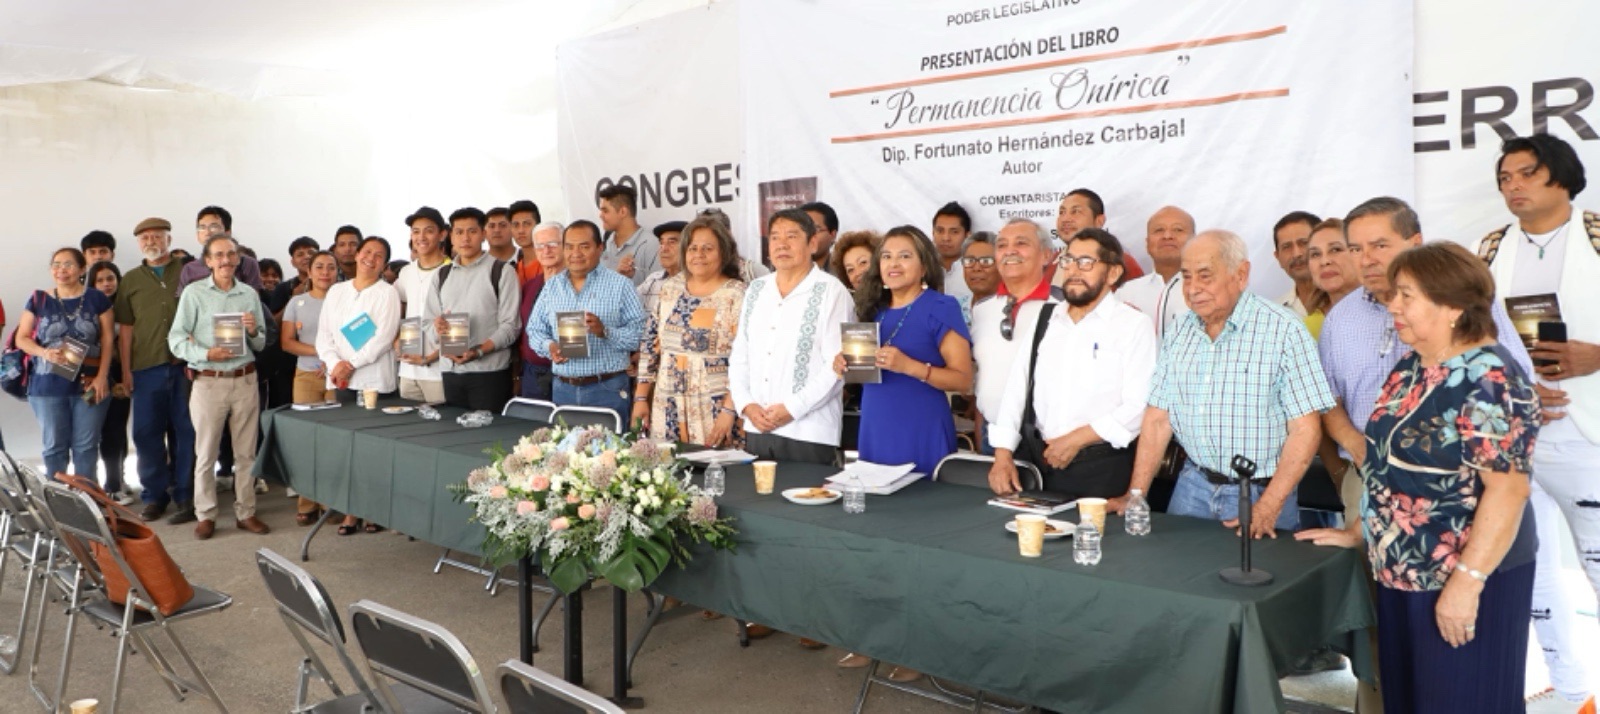 Presentan en Congreso de Guerrero poemario “Permanencia onírica”